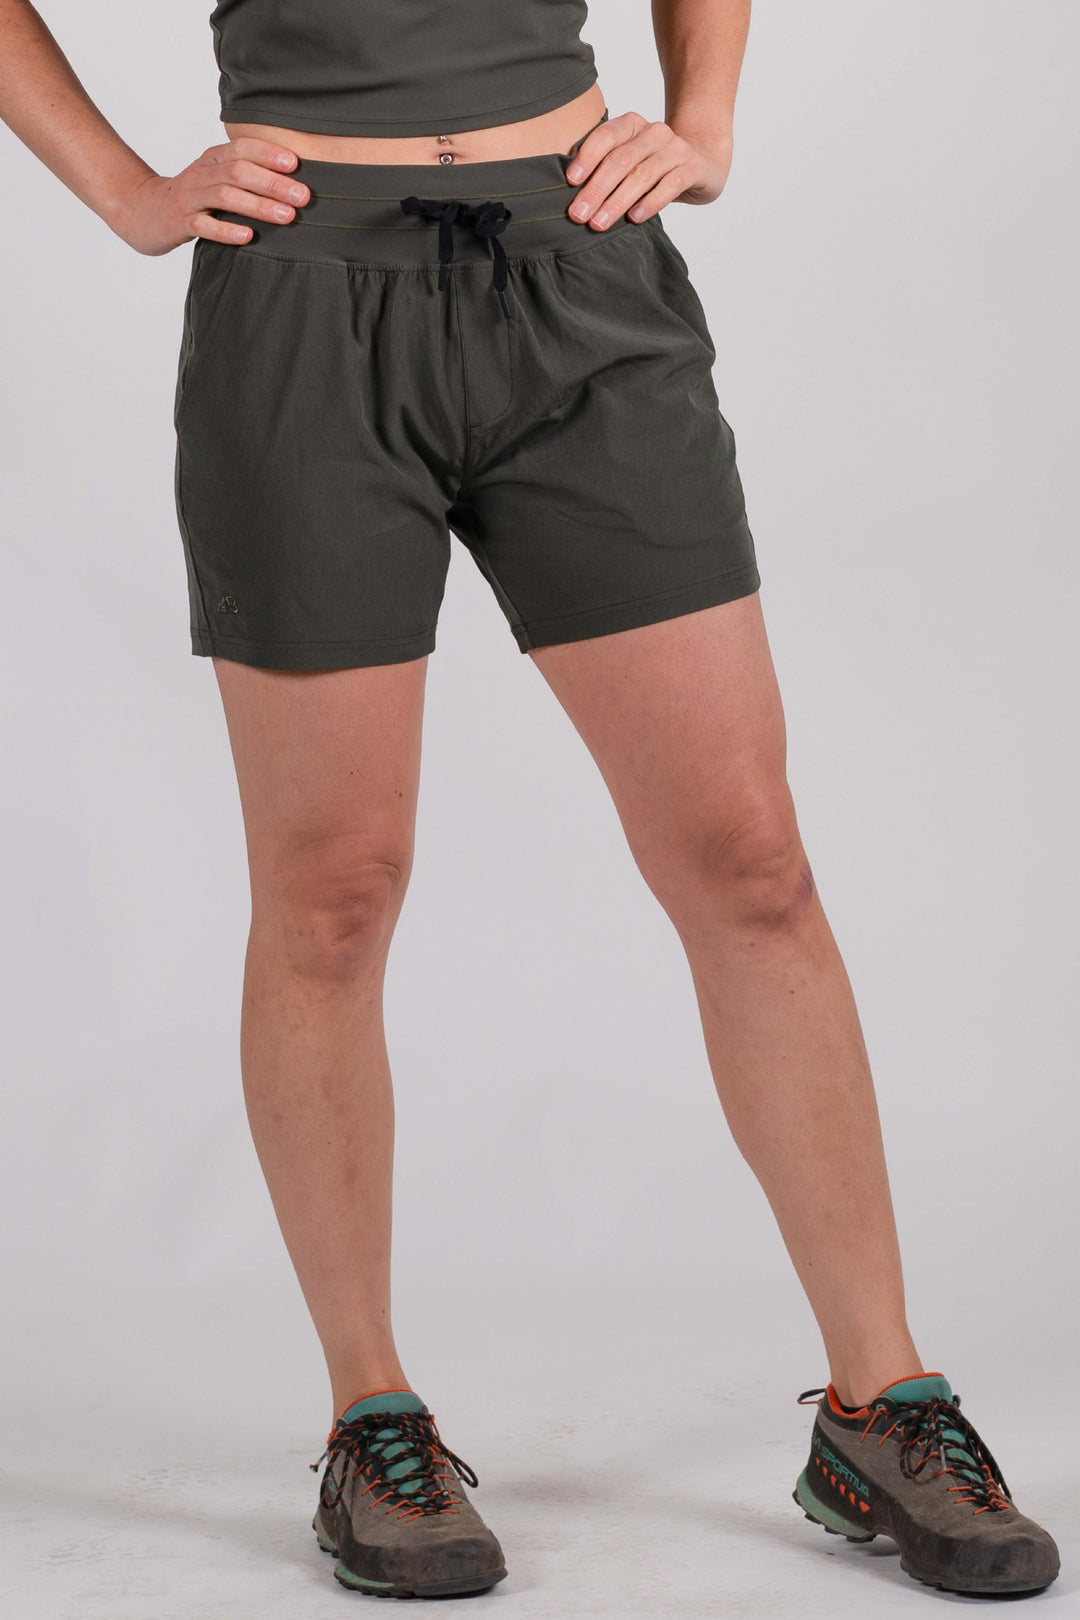 2-Pack Bundle: Women's 5" High-Rise La Plata Shorts (Size M)